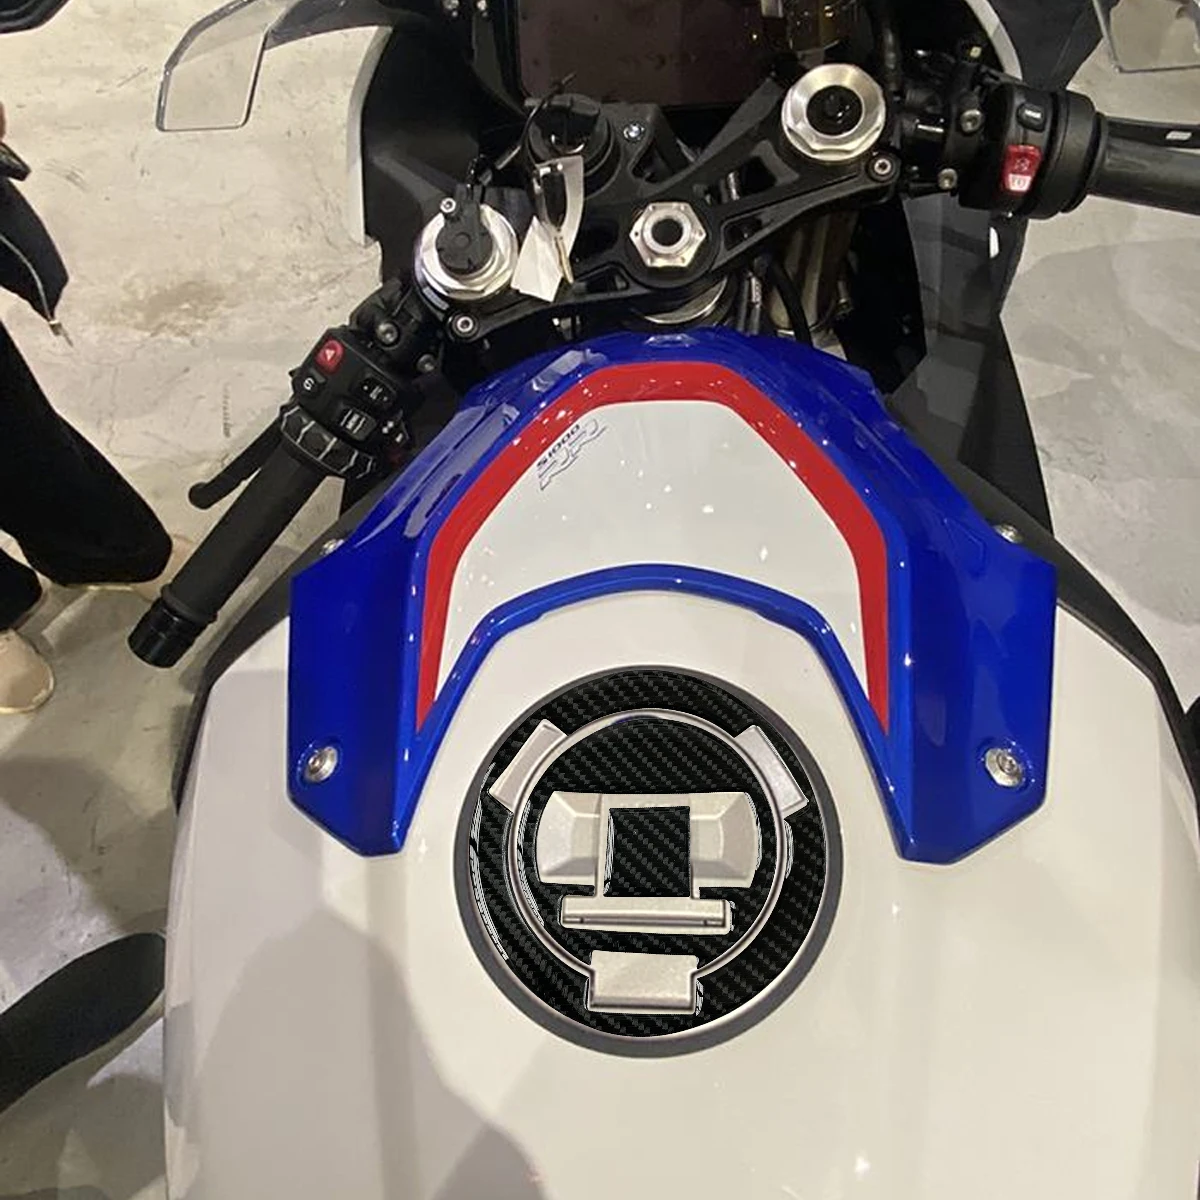 3D motocykl uhlík vlákno palivo komora nálepka palivo plyn čepice obal obtisk příslušenství pro BMW R1200GS F800R F650GS S1000RR HP2 sport